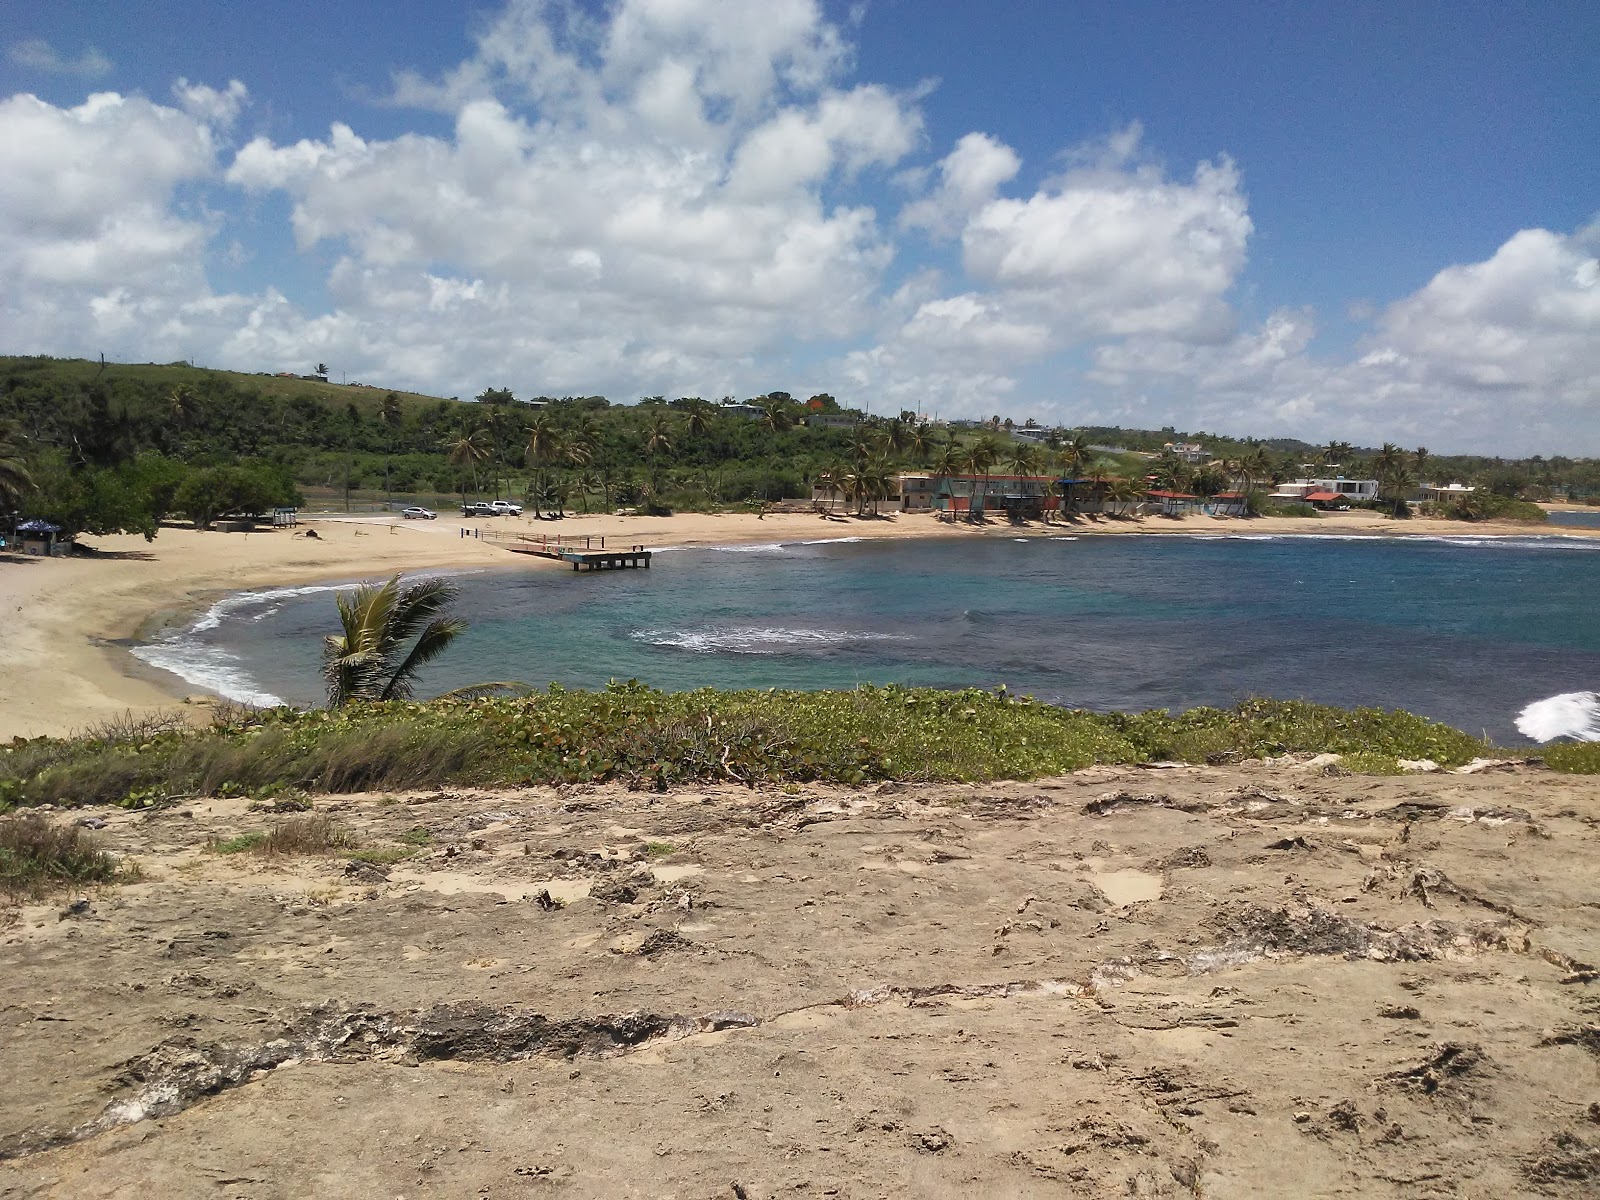 Zdjęcie Penon Amador beach z przestronna zatoka